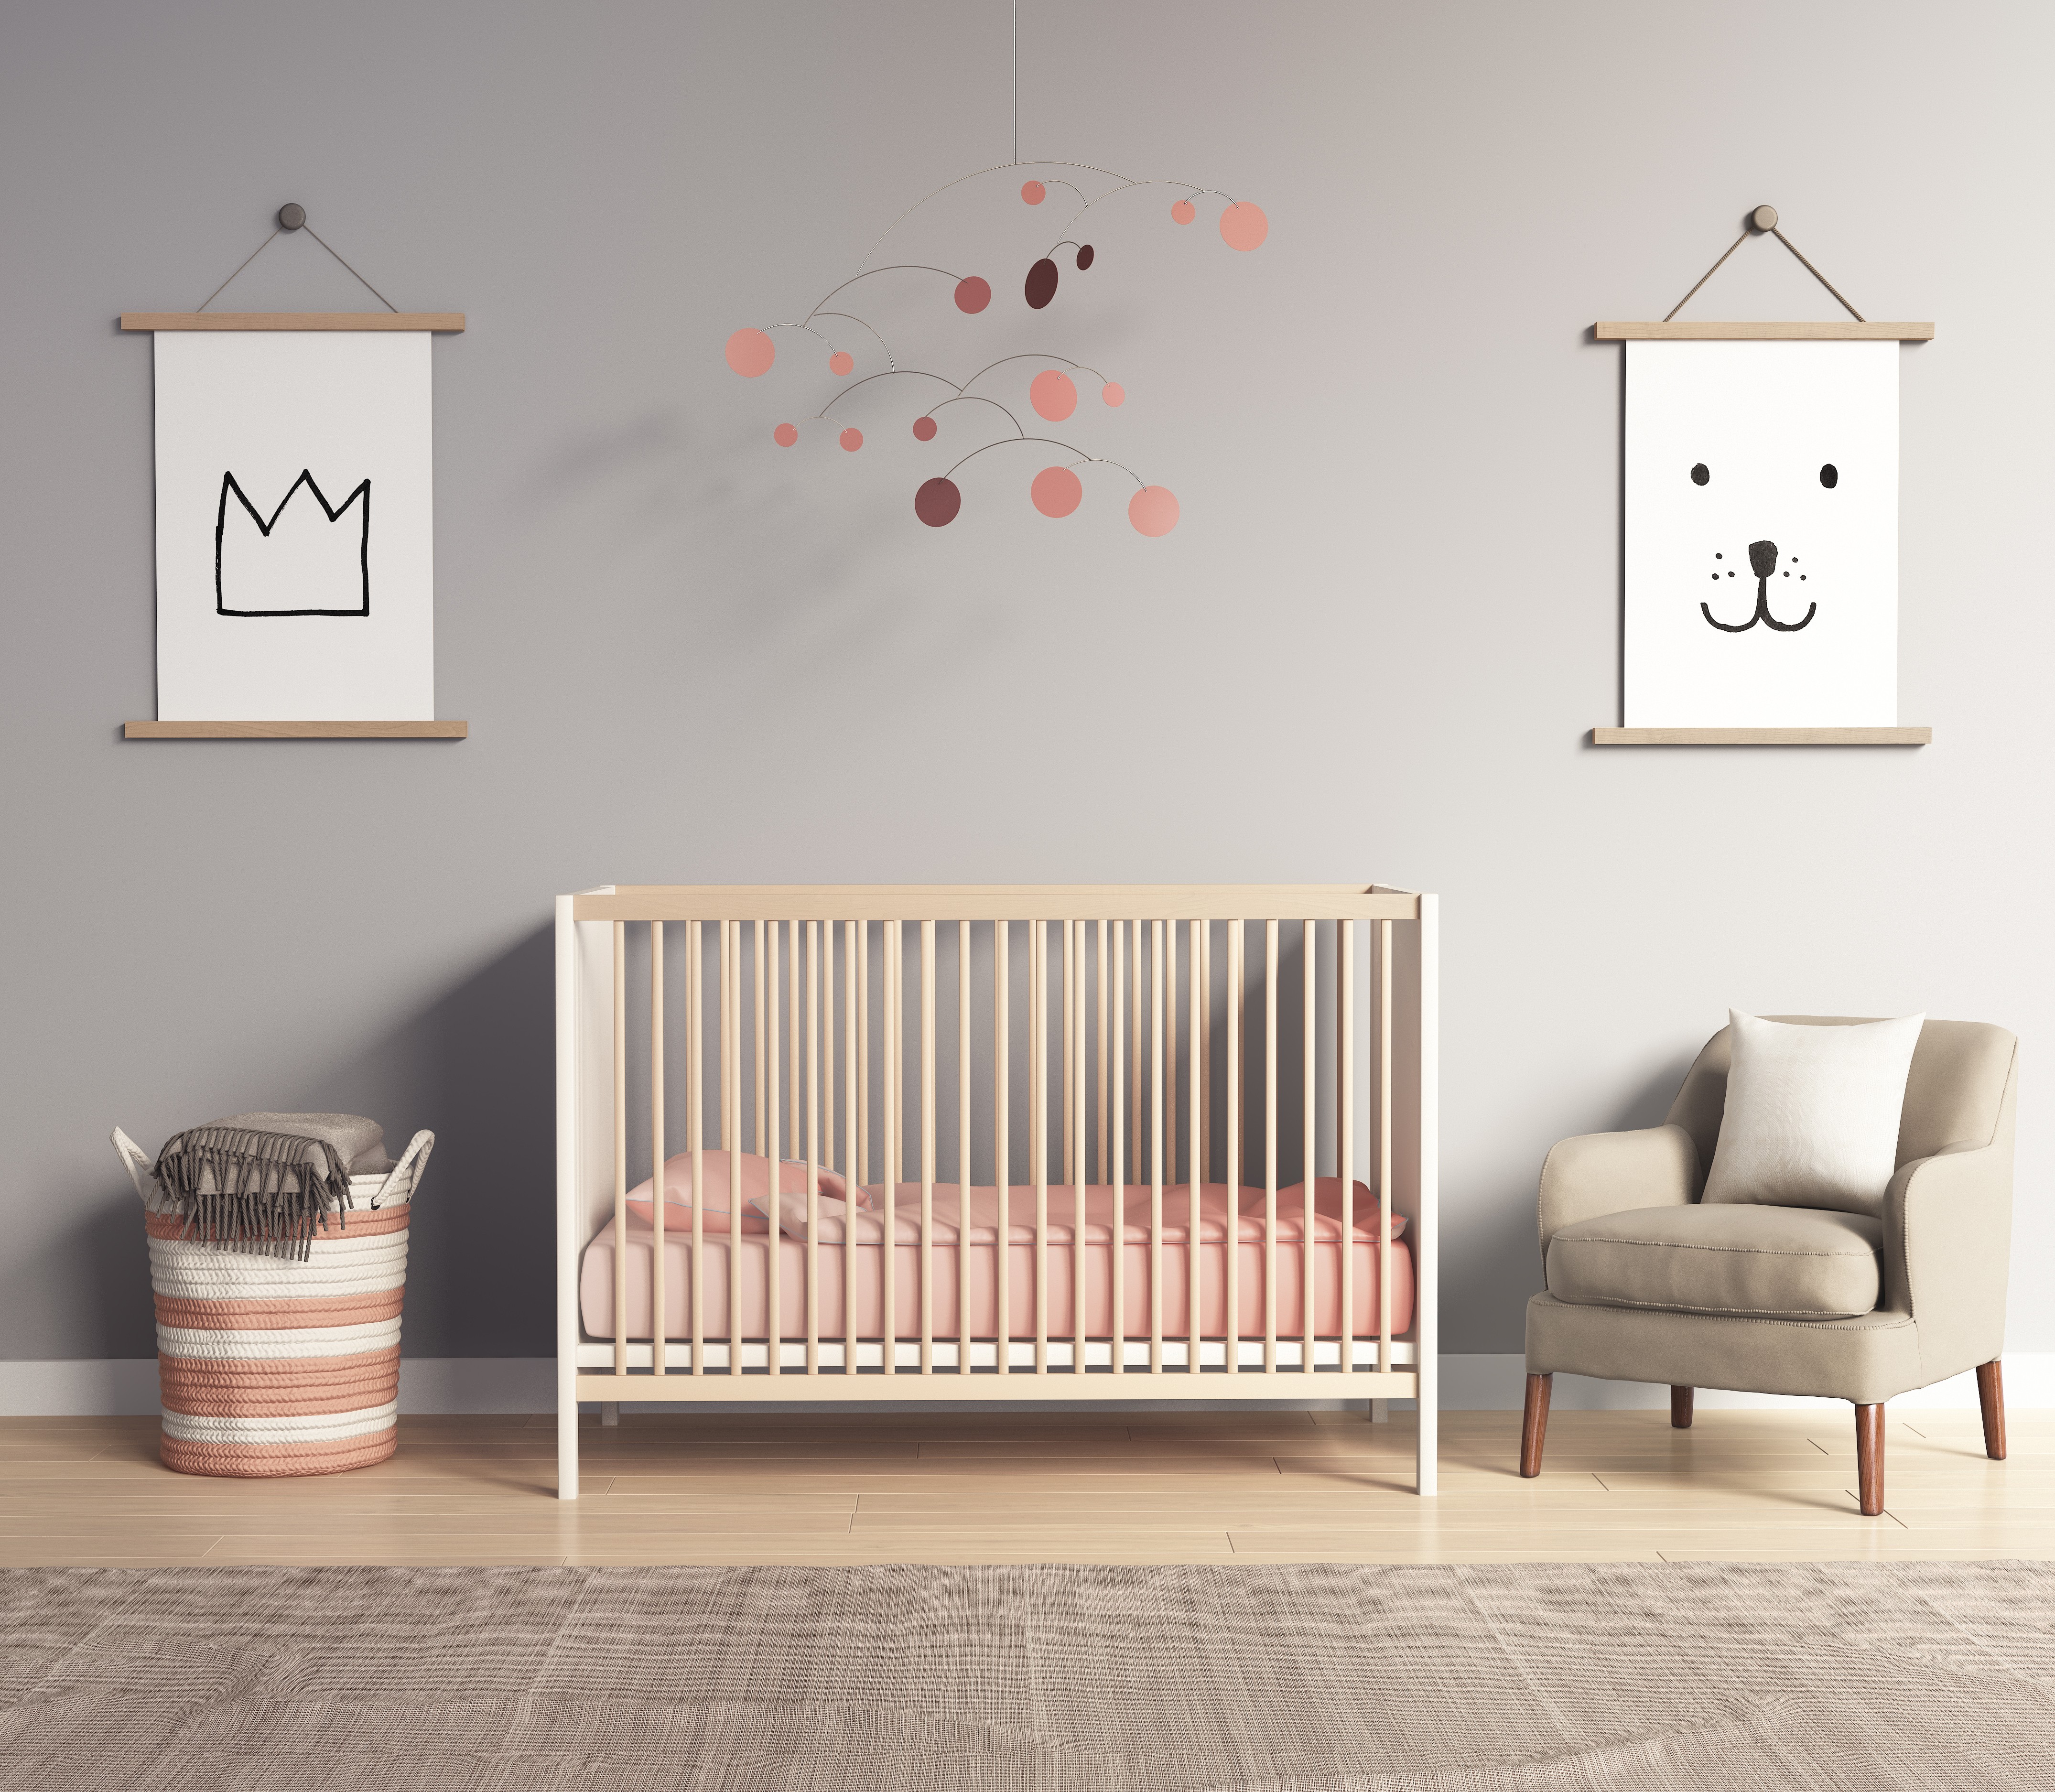 Animação e sonhos podem ganhar forma no quarto do bebê (Foto: Thinkstock)